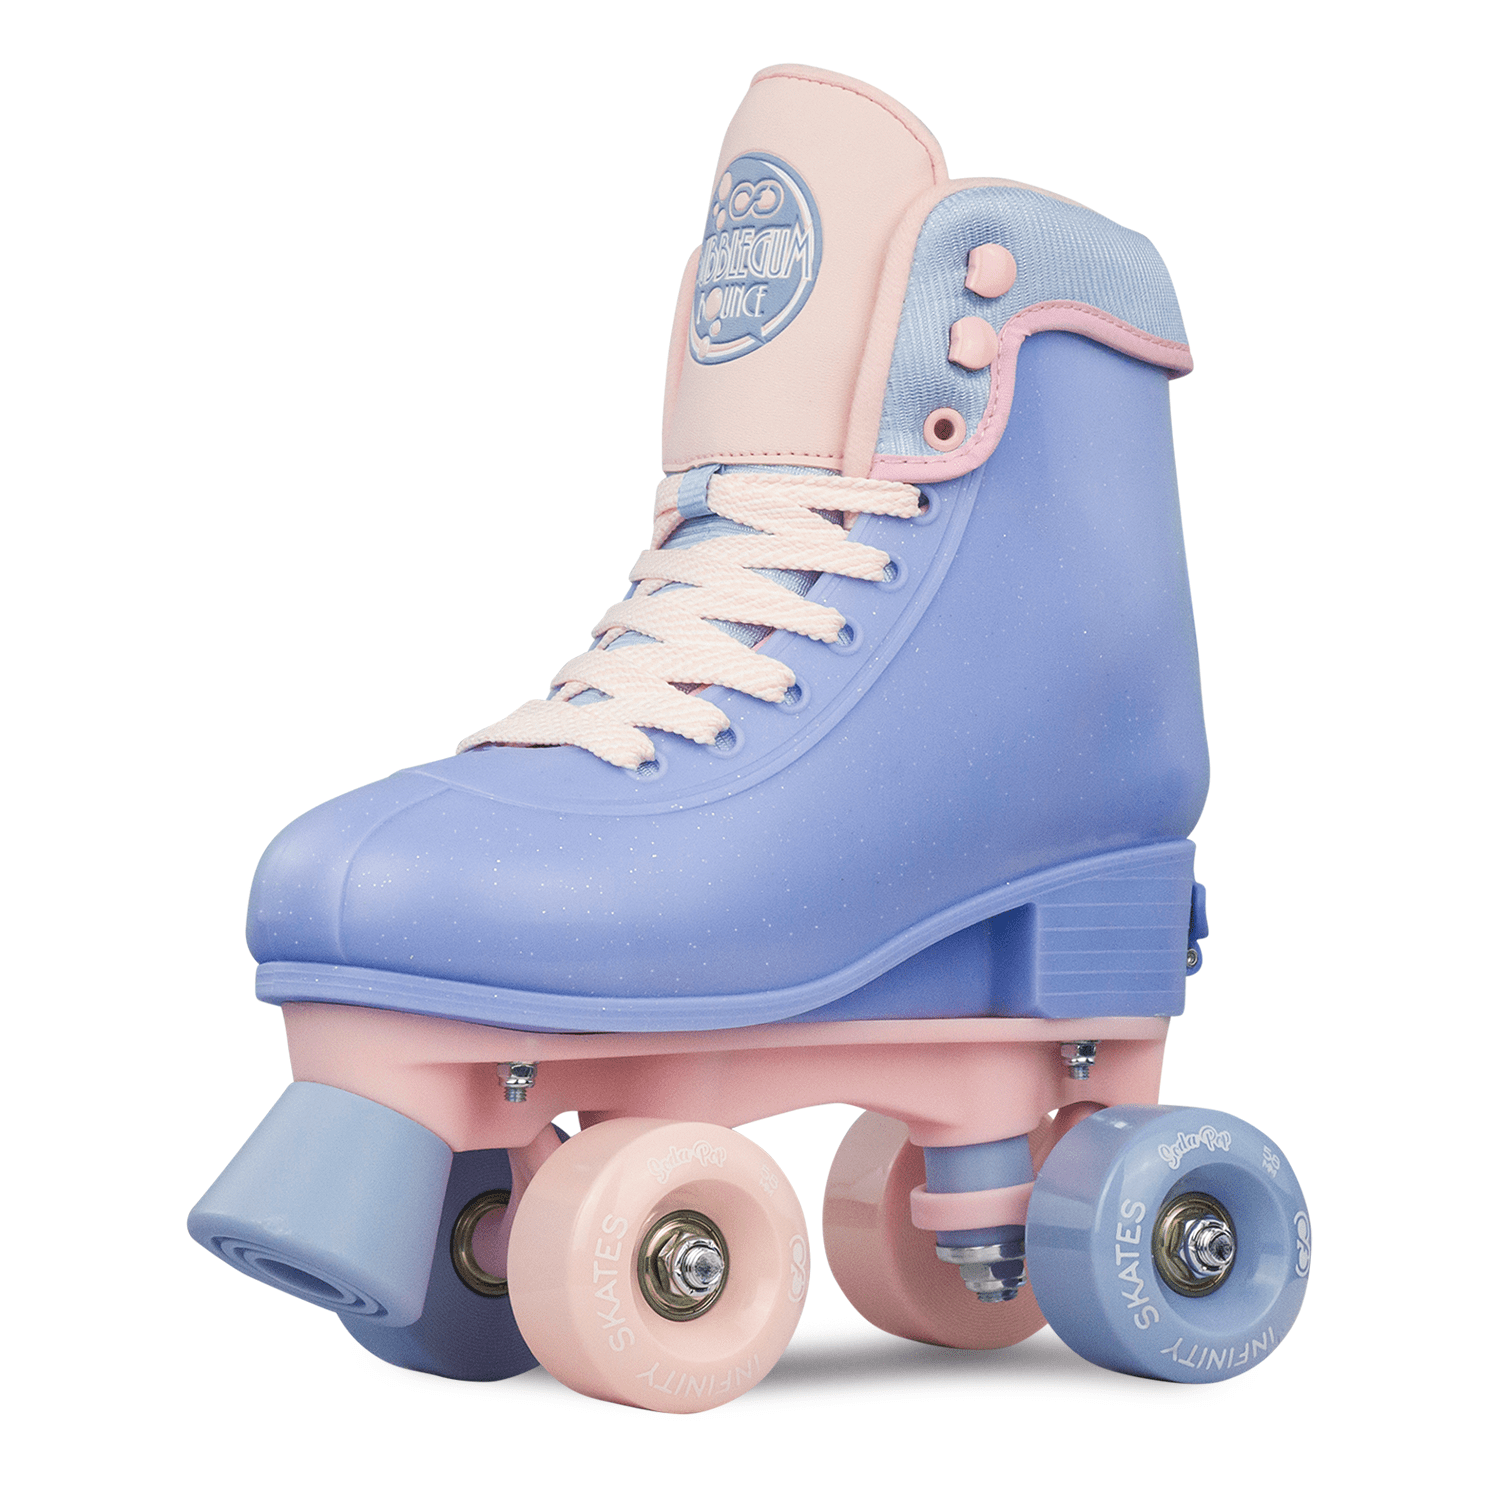 Crazy Skates Soda Pop Adjustable Roller Skates for Girls and Boys Adjusts t... 